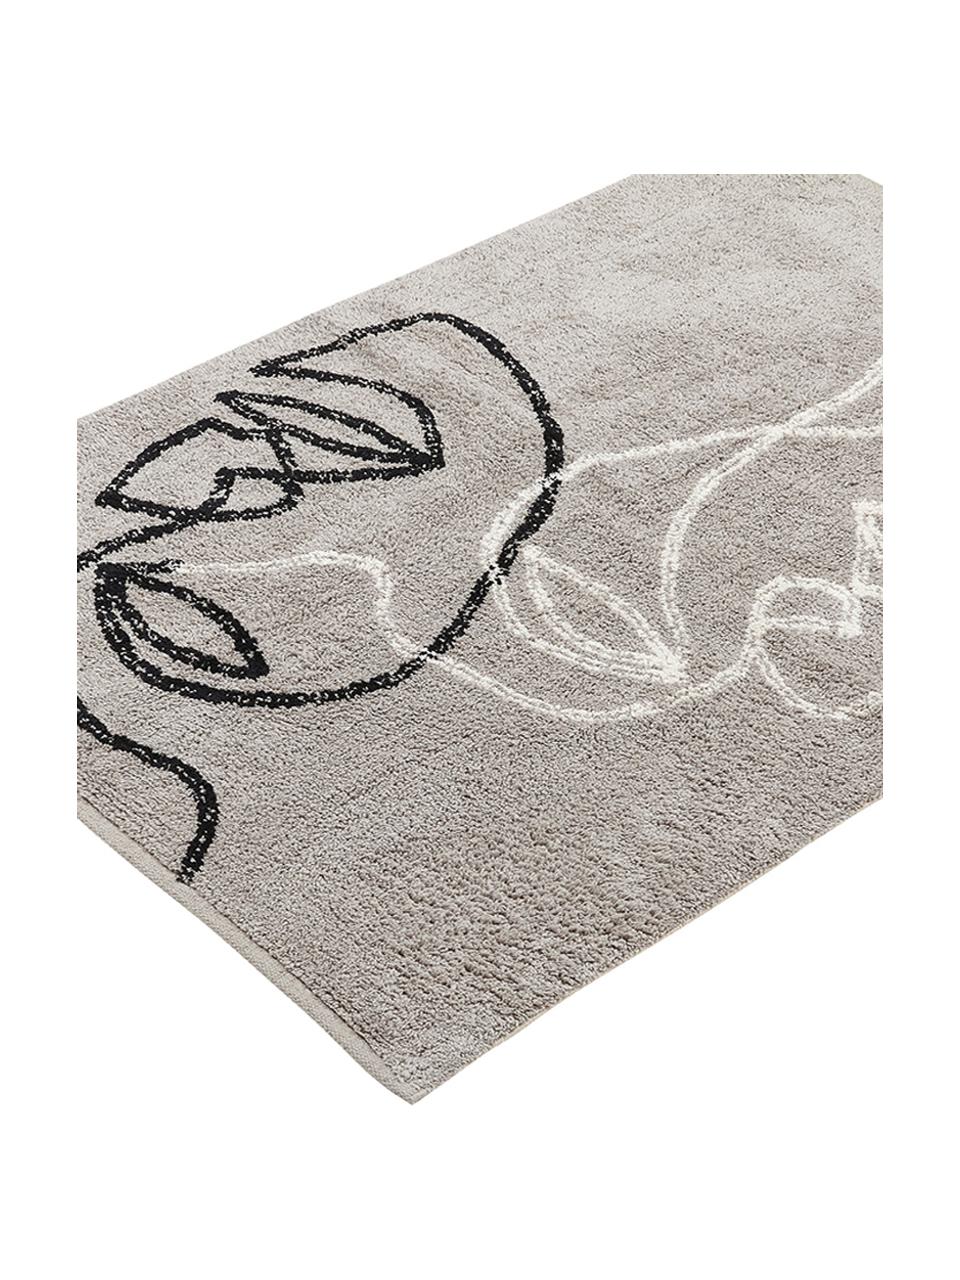 Tappeto in cotone con motivo astratto Visage, Cotone organico, Grigio, nero, bianco, Larg. 90 x Lung. 120 cm (taglia S)